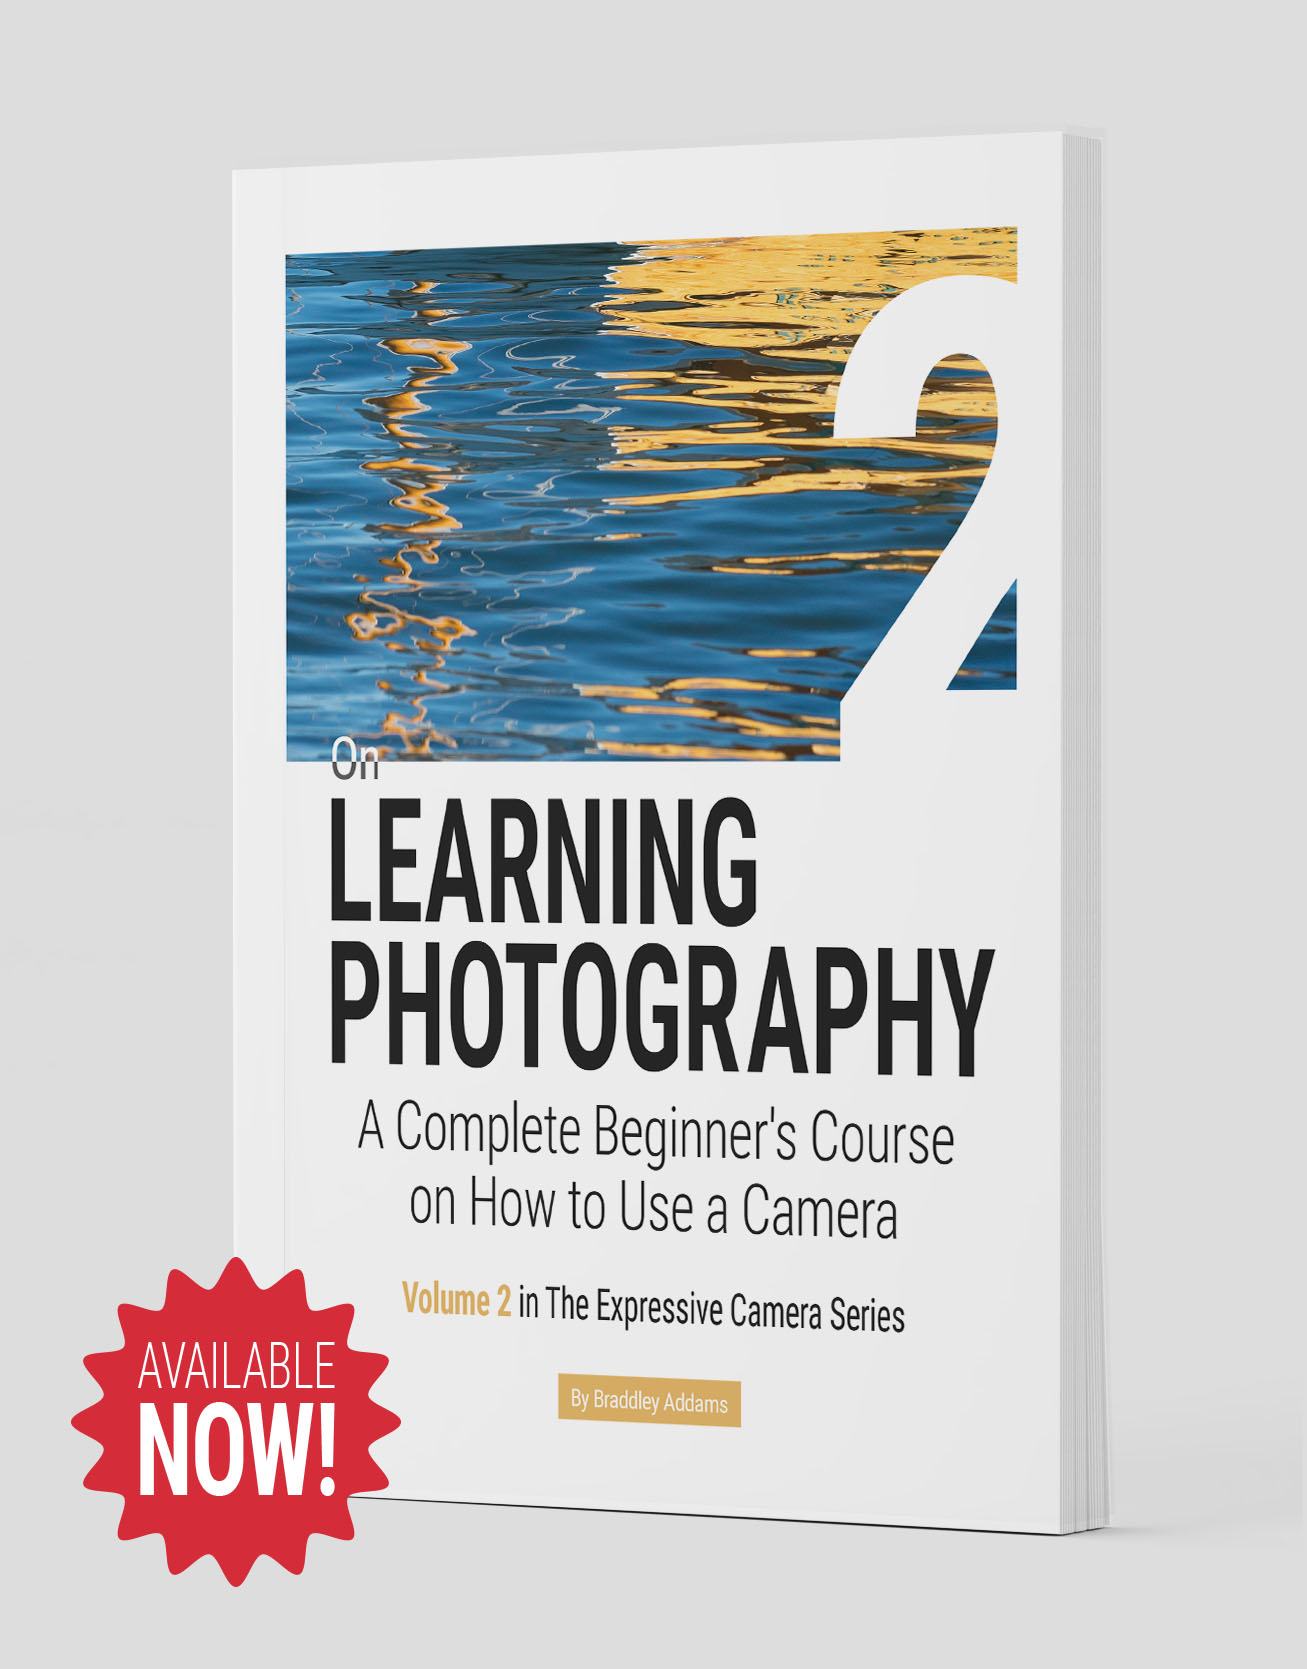 Buy On LEARNING PHOTOGRAPHY on Amazon